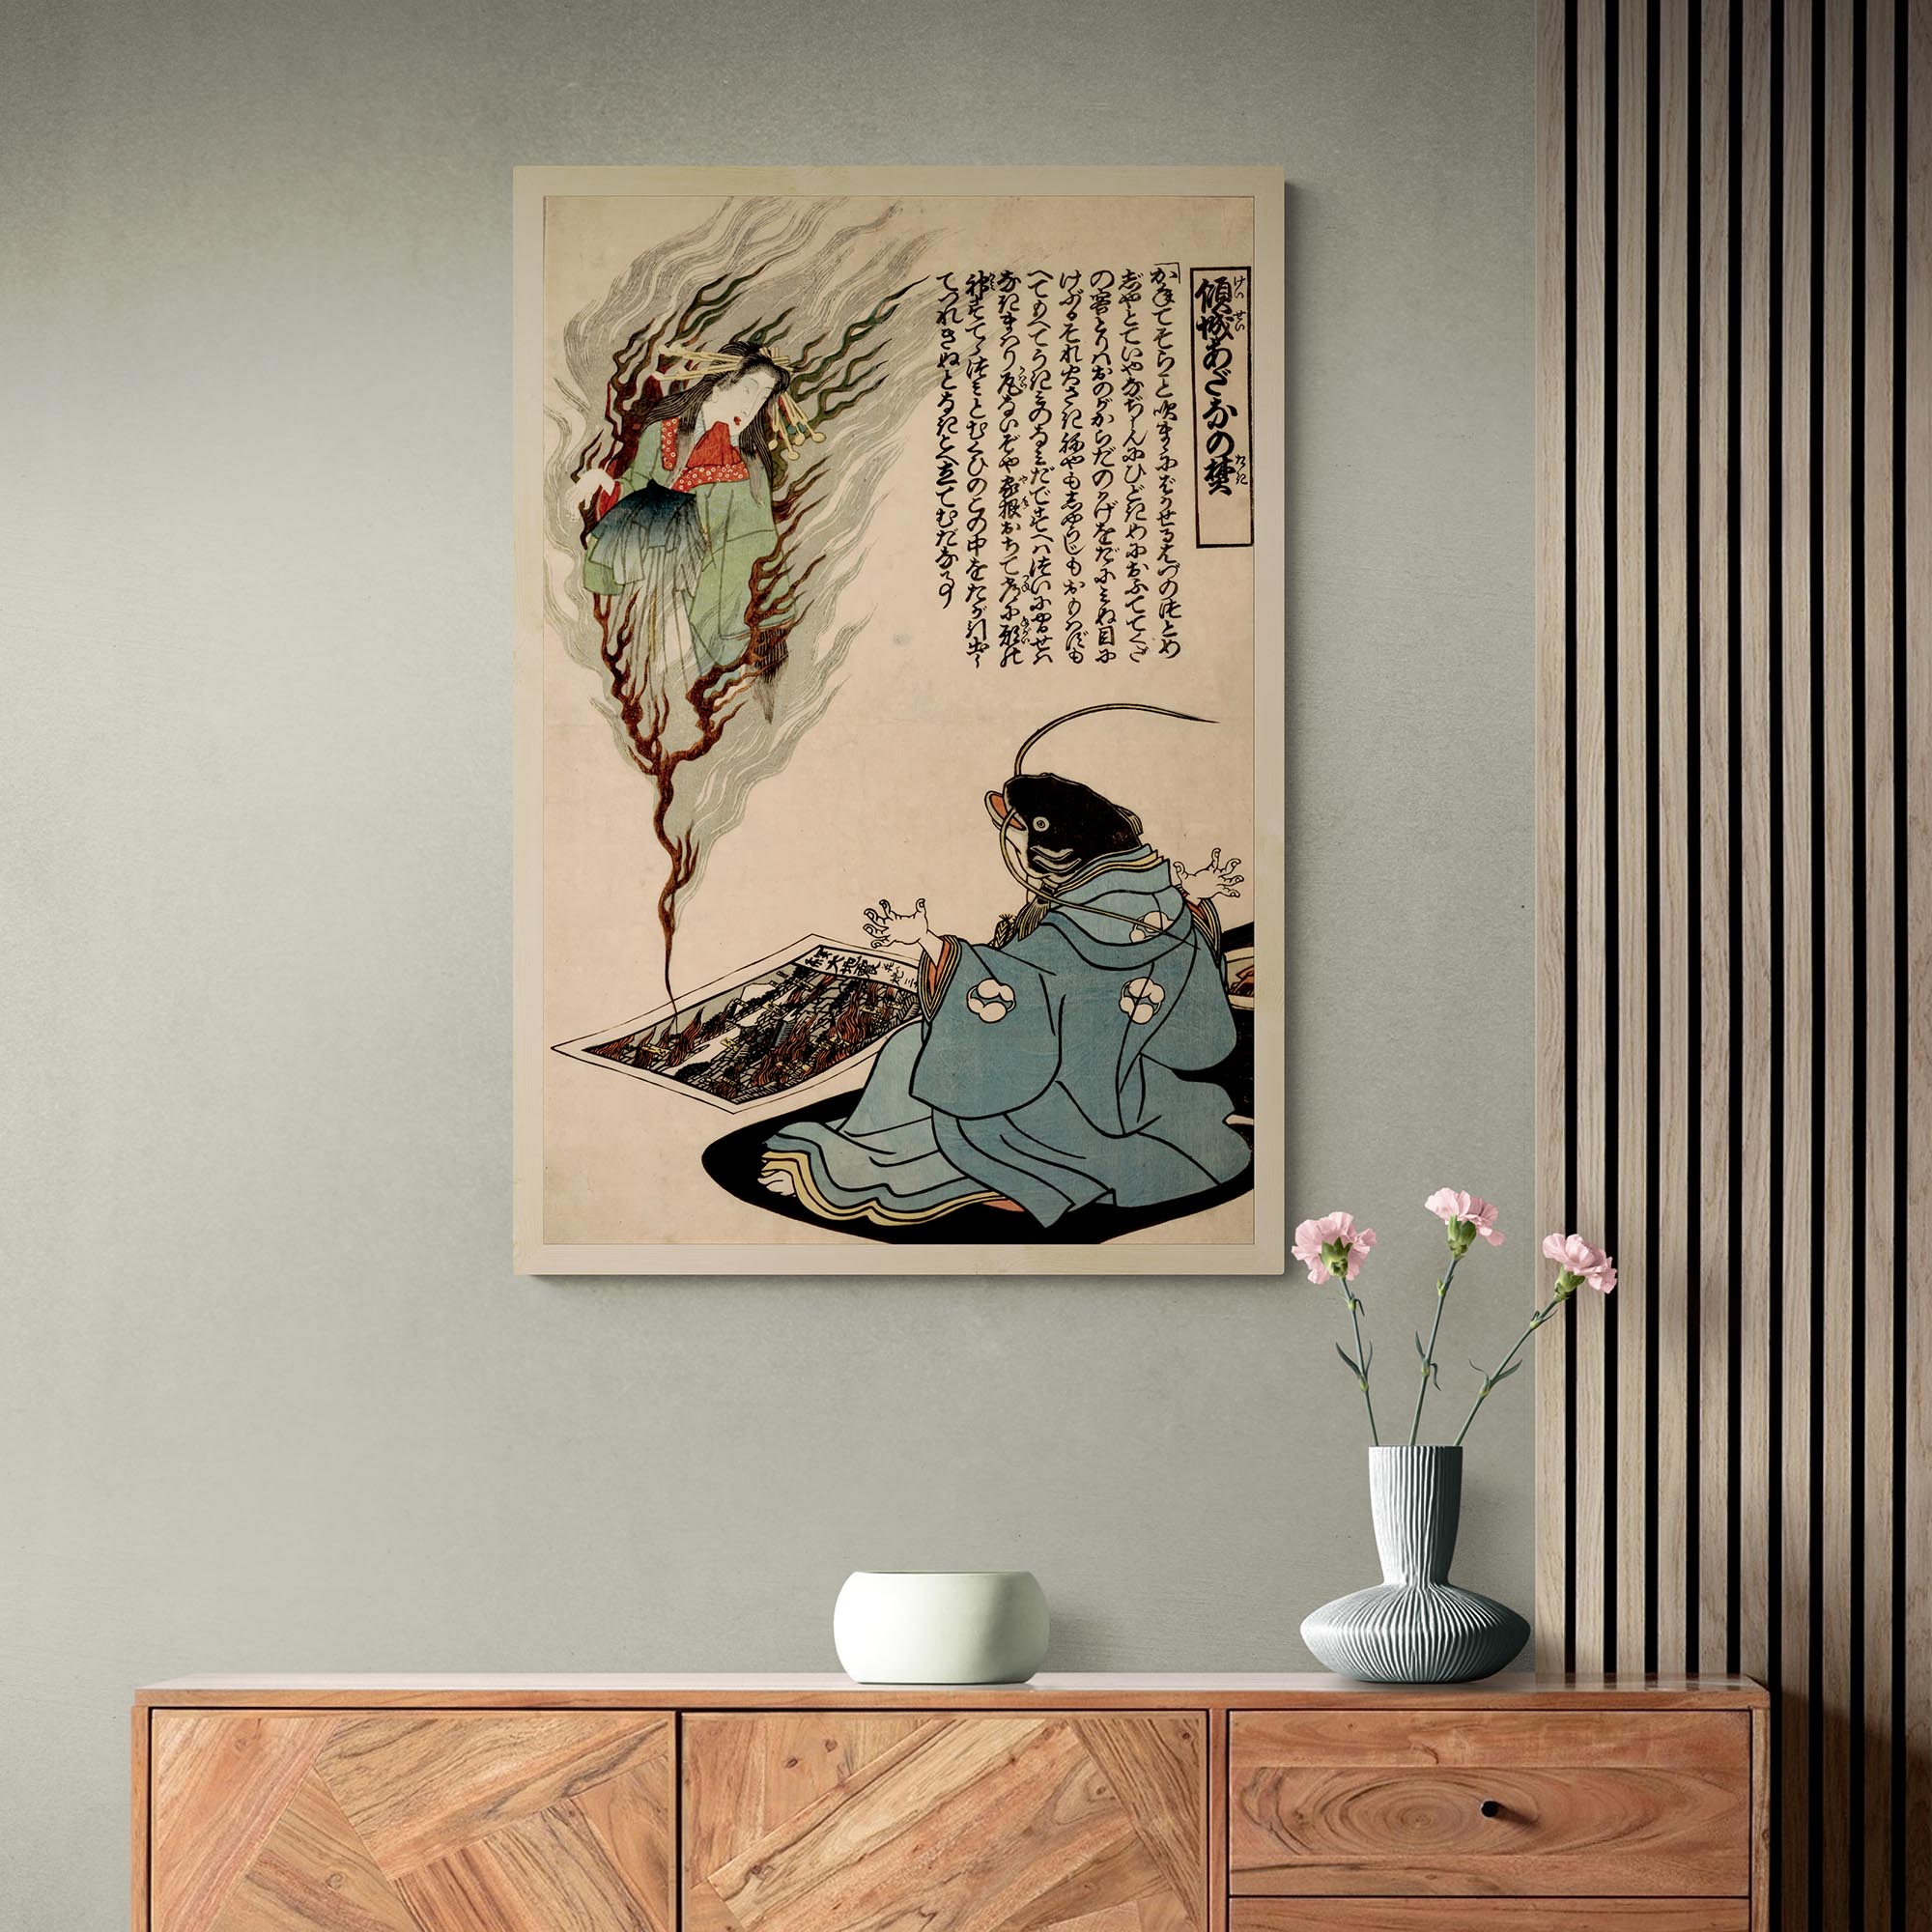 giclee 4"x6" The Namazu Yokai | Japanese Catfish Yokai Mythology Earthquake Deity | Namazu Catfish Vintage Woodblock Fine Art Print